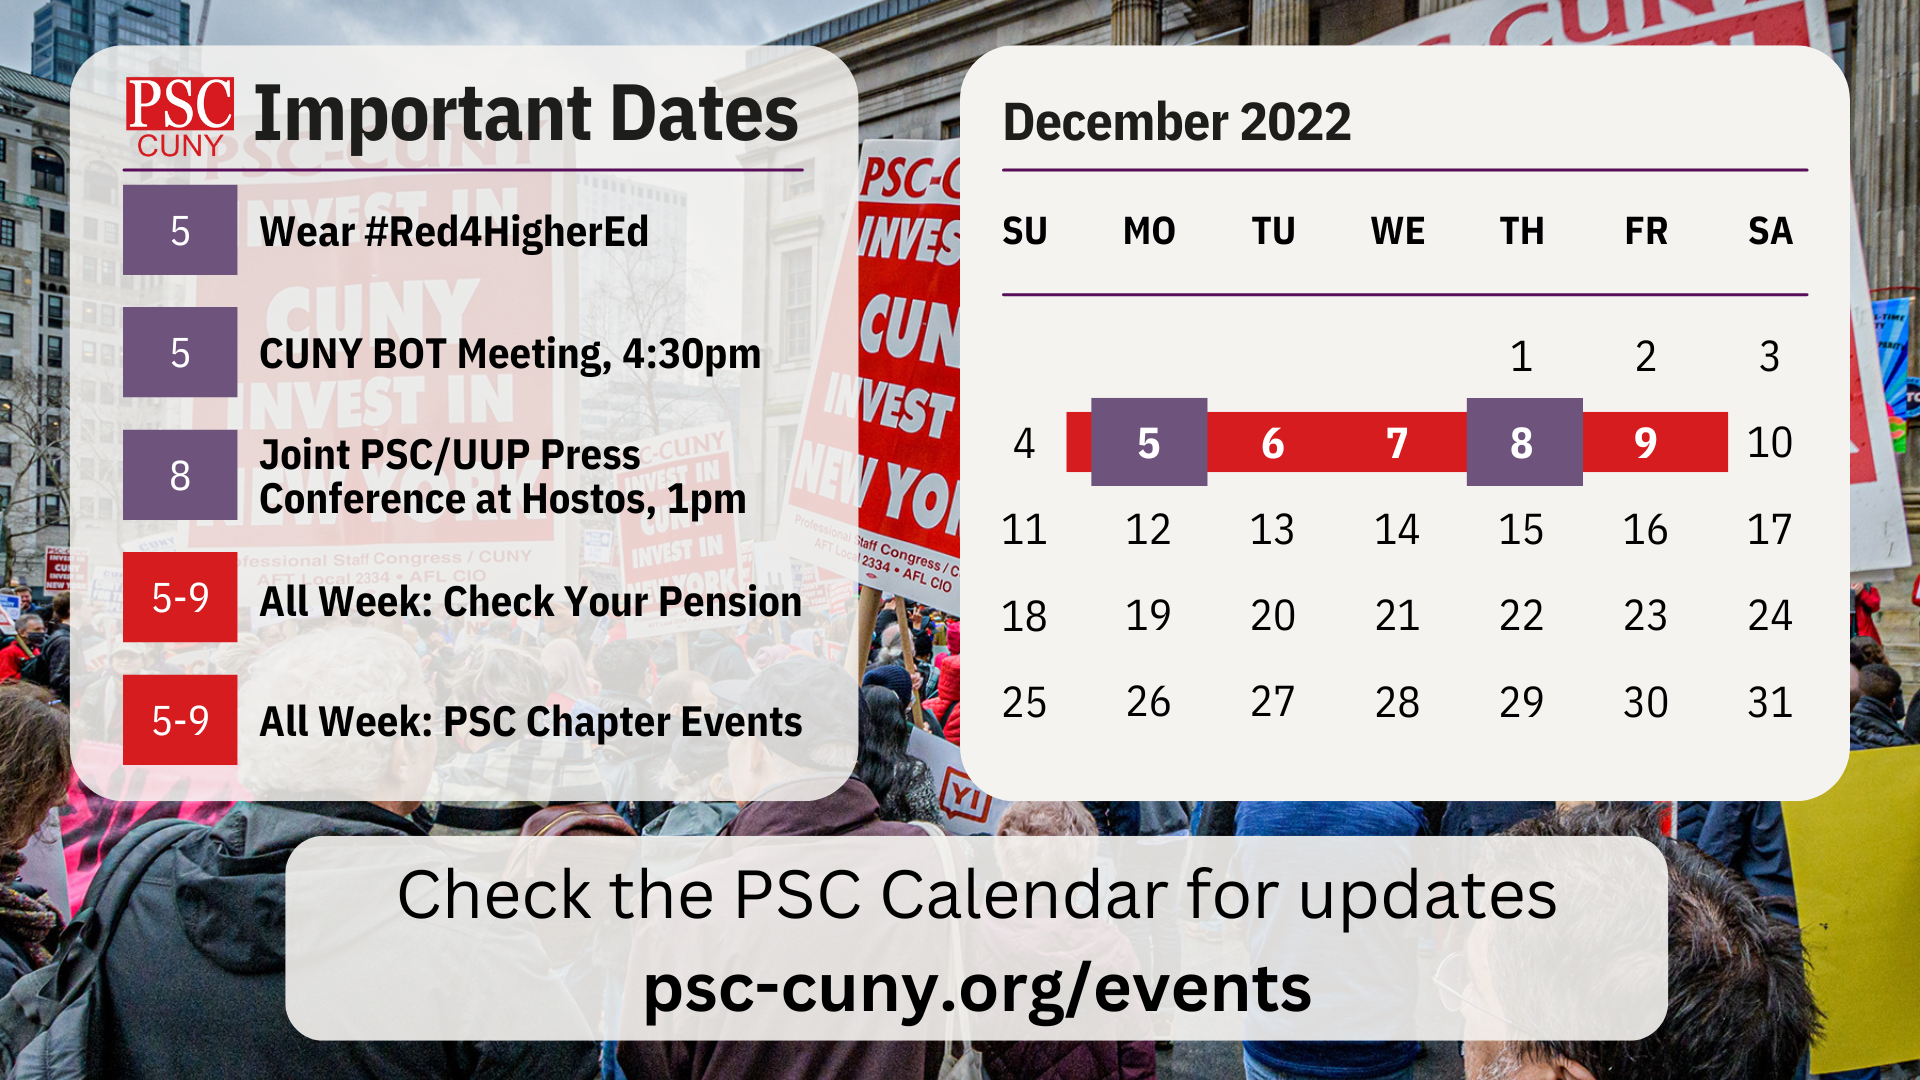 PSC Calendar of Important Dates Dec 2022